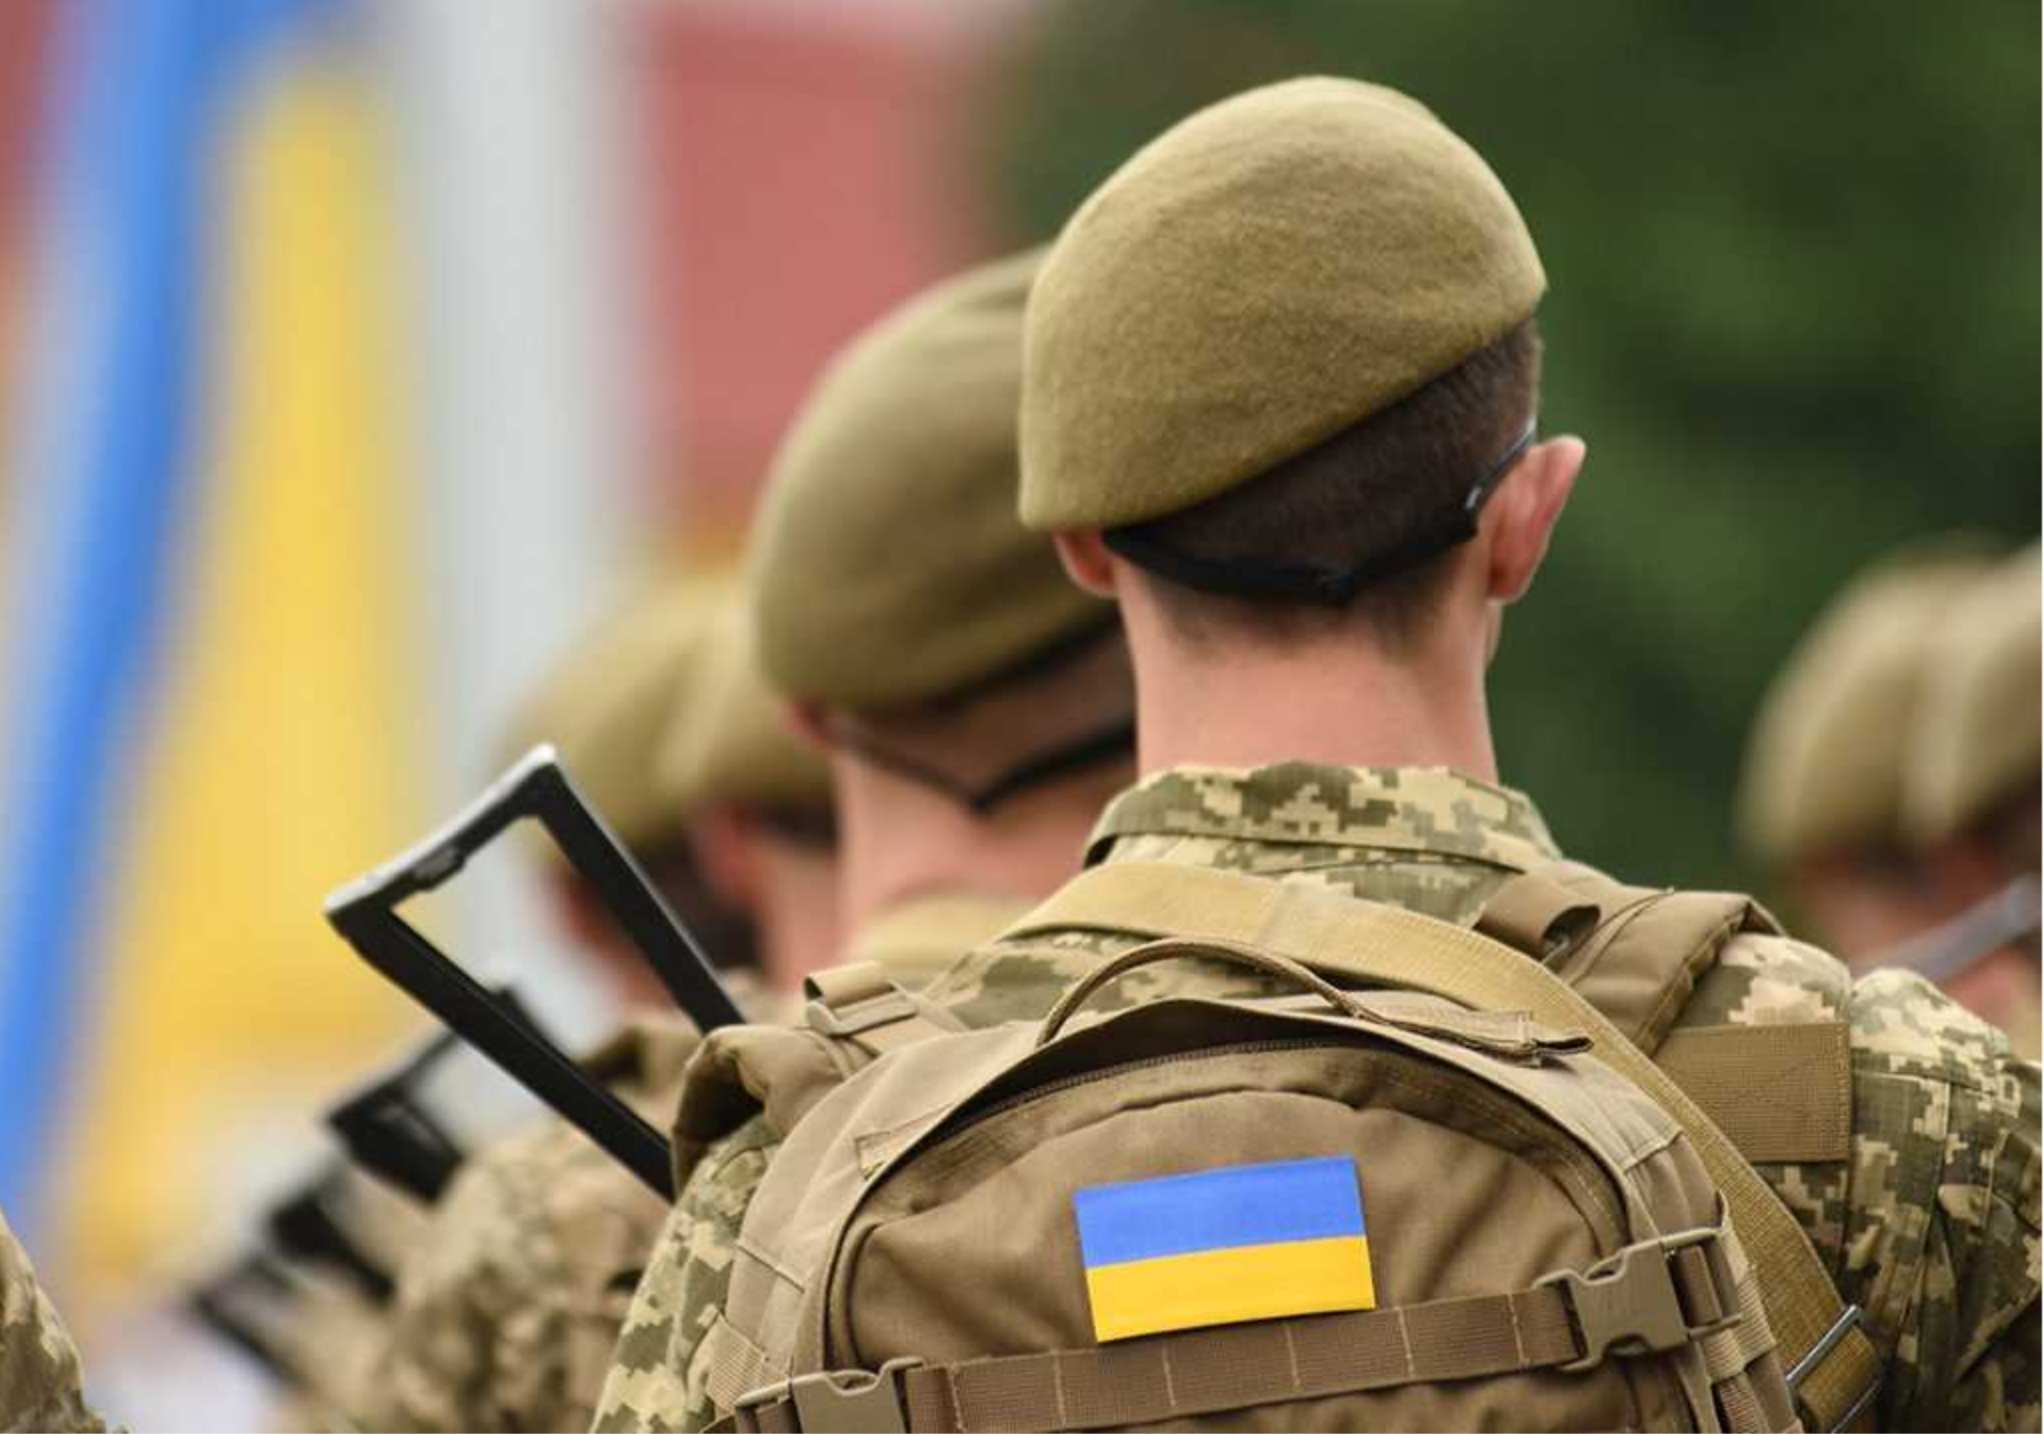 Как военнообязанные спортсмены бегут из Украины